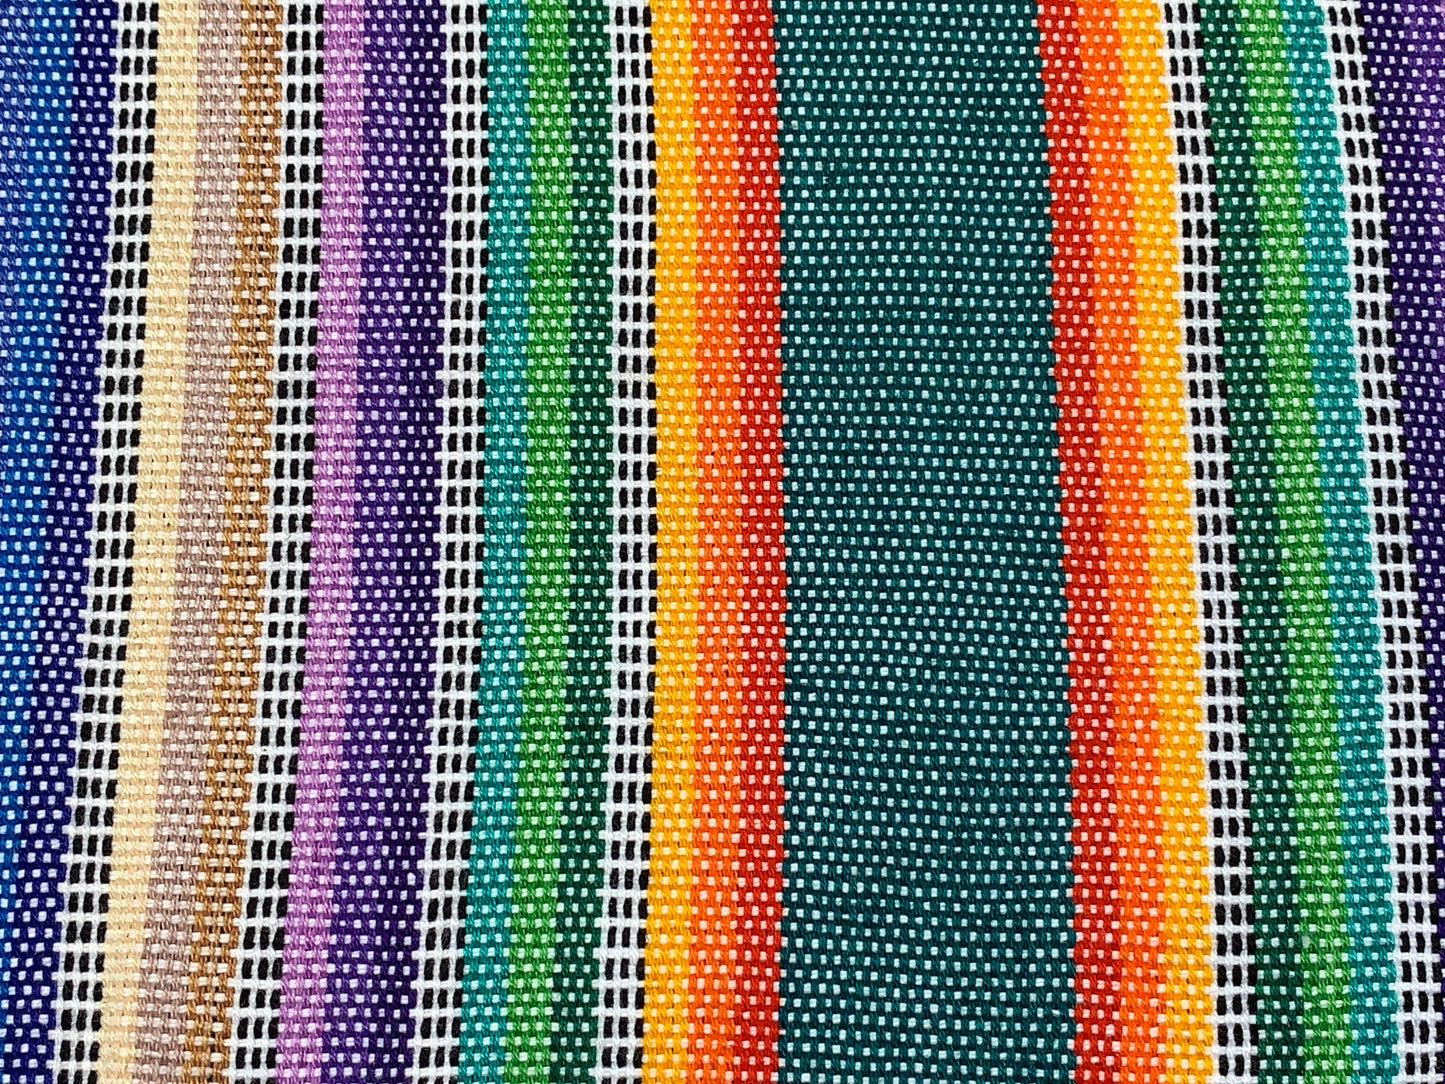 Guatemalan Handwoven Pastel Rainbow Ikat